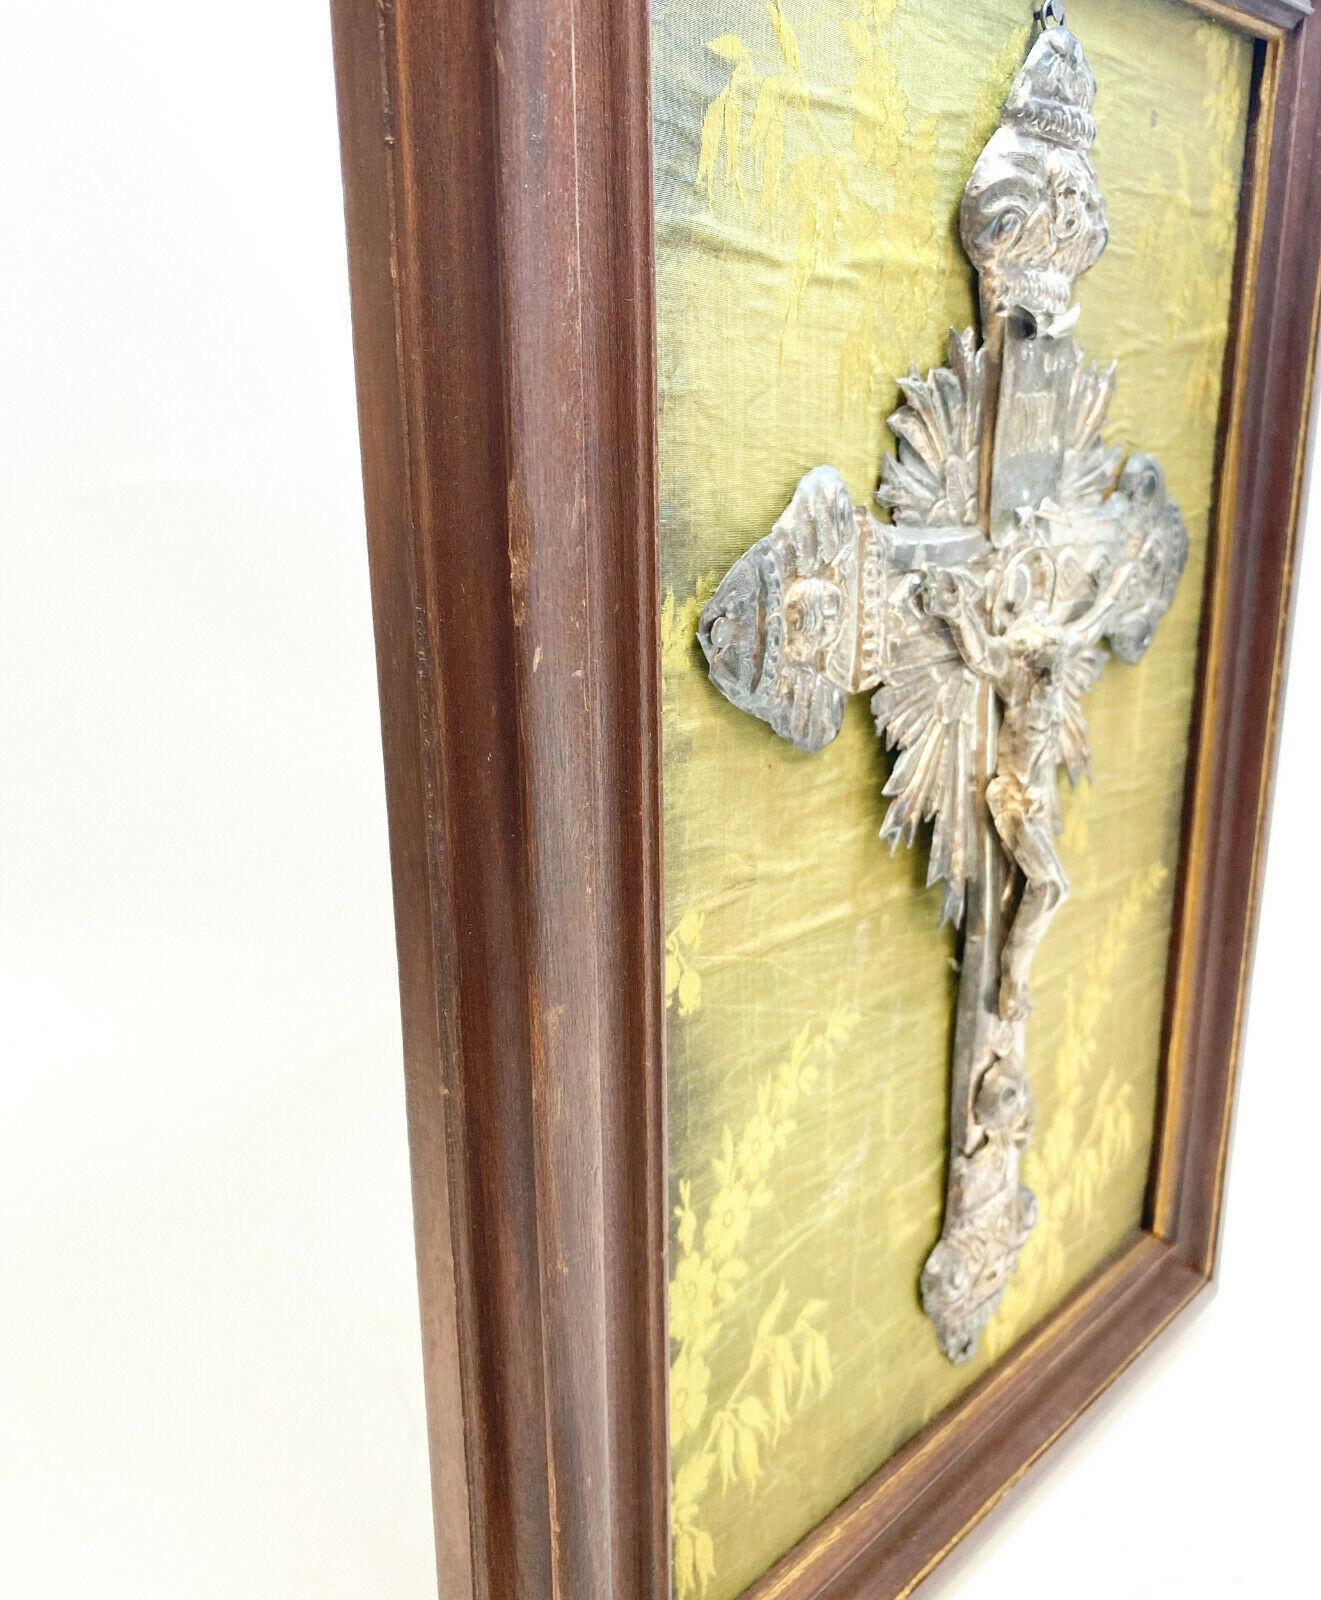 crucifix above screen